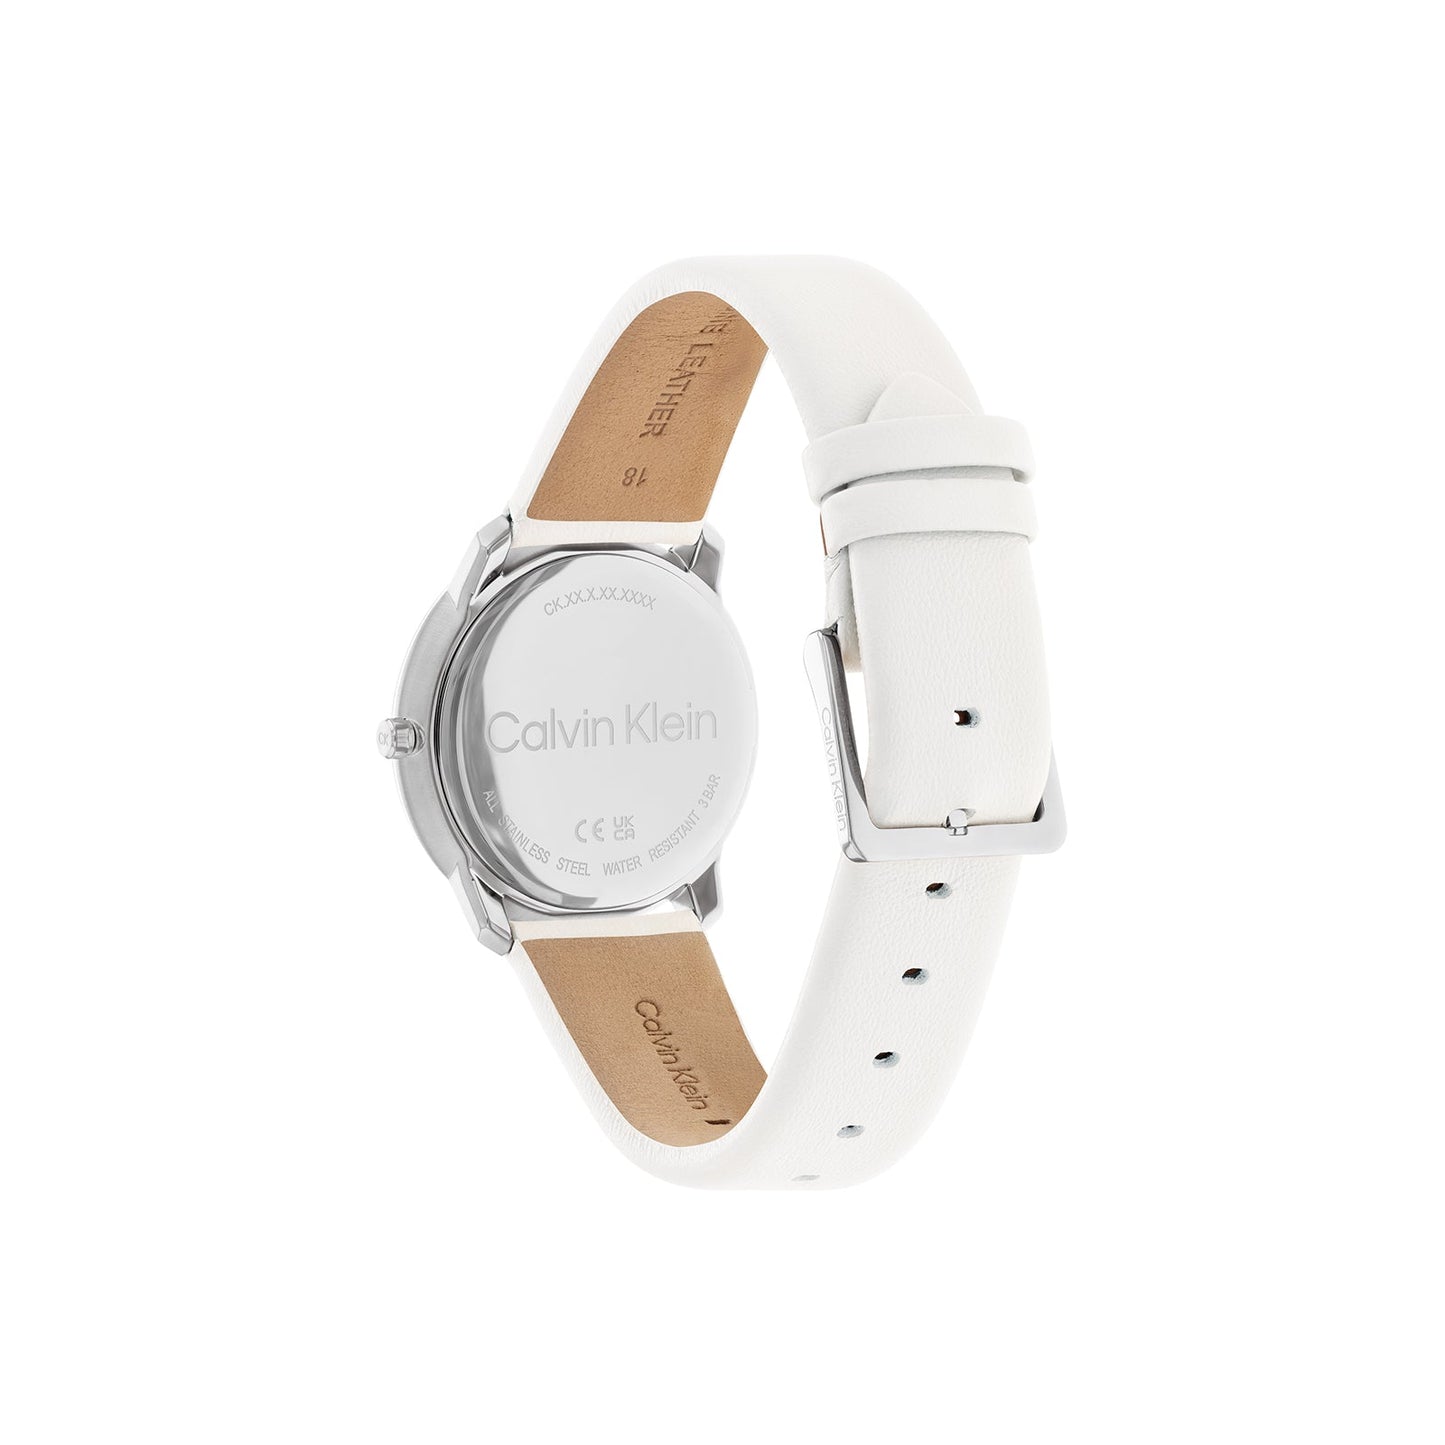 Calvin Klein 25200161 Unisex Leather Watch